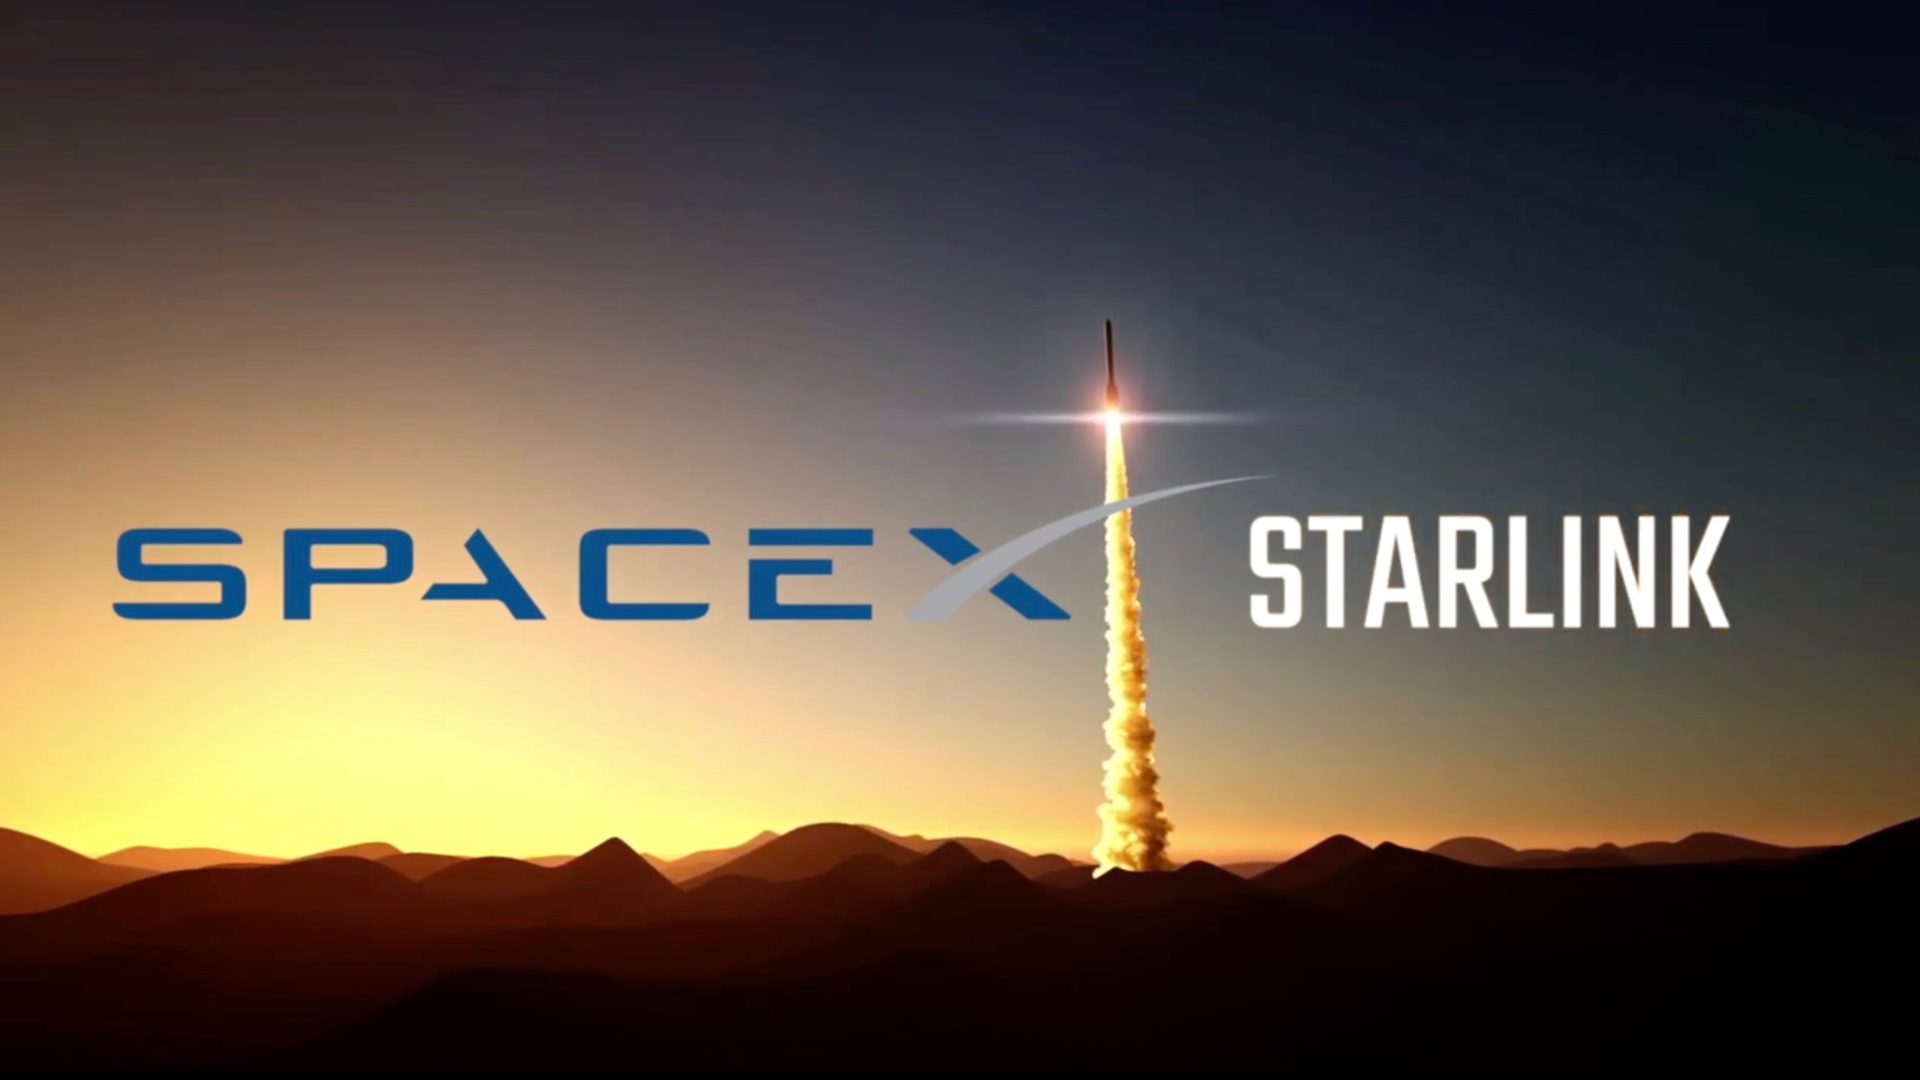 Η SpaceX έχει παραδώσει 100,000 Starlink τερματικά σε πελάτες της